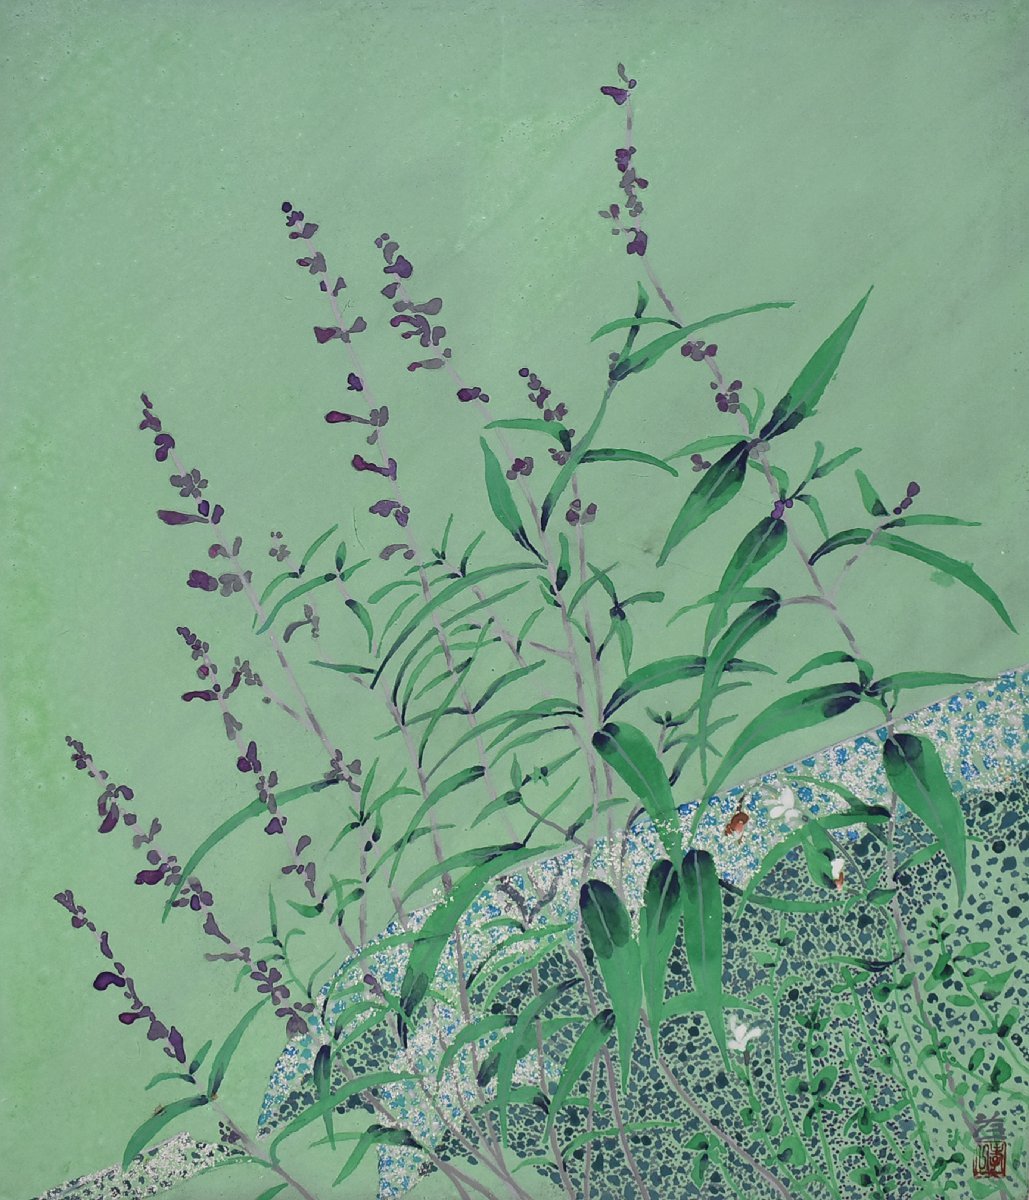 [معرض سيكو - 5500 عنصر معروض! ابحث عن عملك المفضل] الرسام الياباني الشهير كويتشي سوزوكي 10F رينرين مع الإطار, تلوين, اللوحة اليابانية, الزهور والطيور, الطيور والوحوش